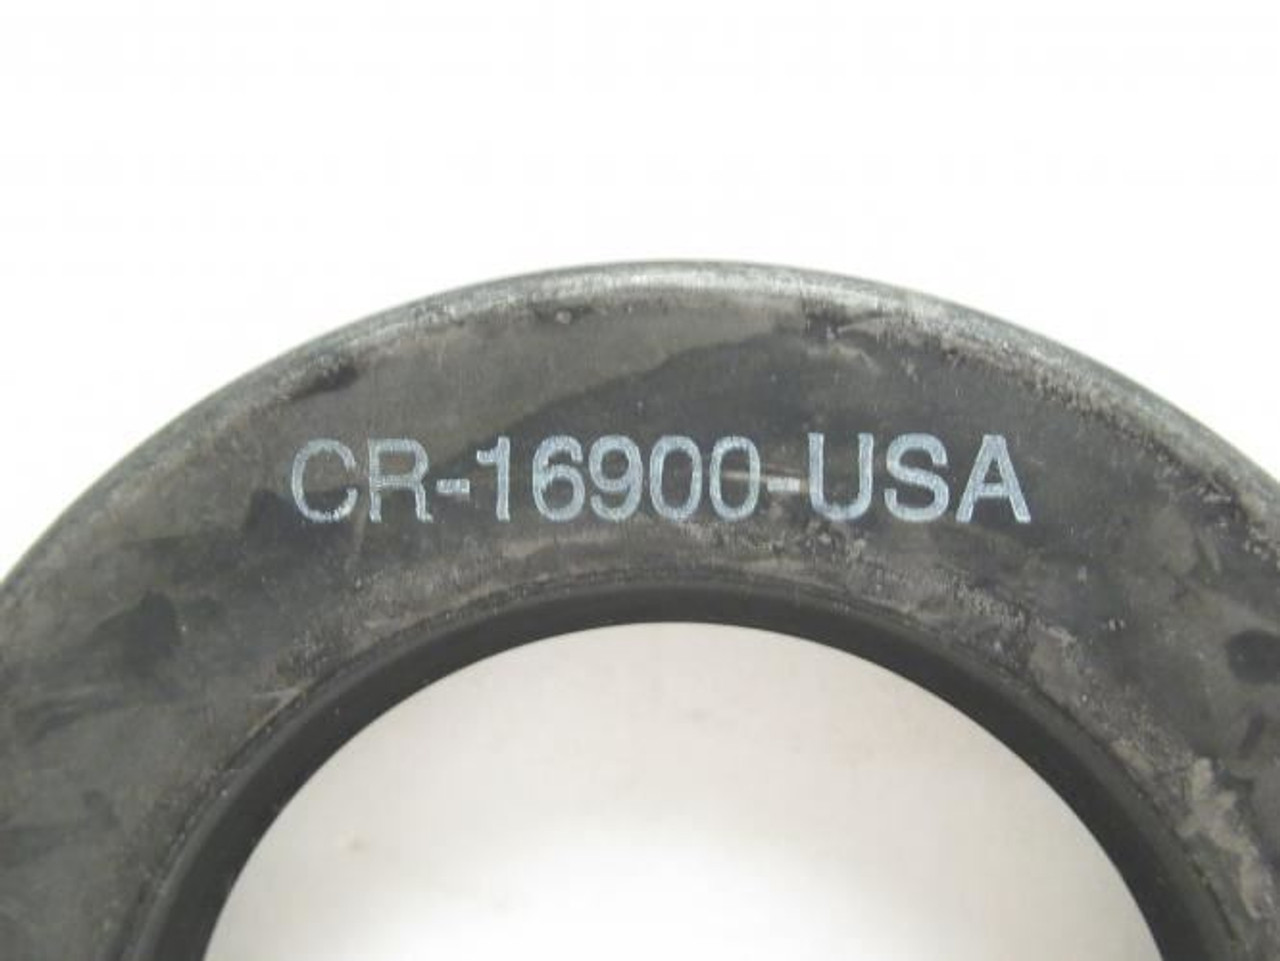 CR 16900, Oil Seal 1.688"ID x 2.75"OD x 0.313" Wide